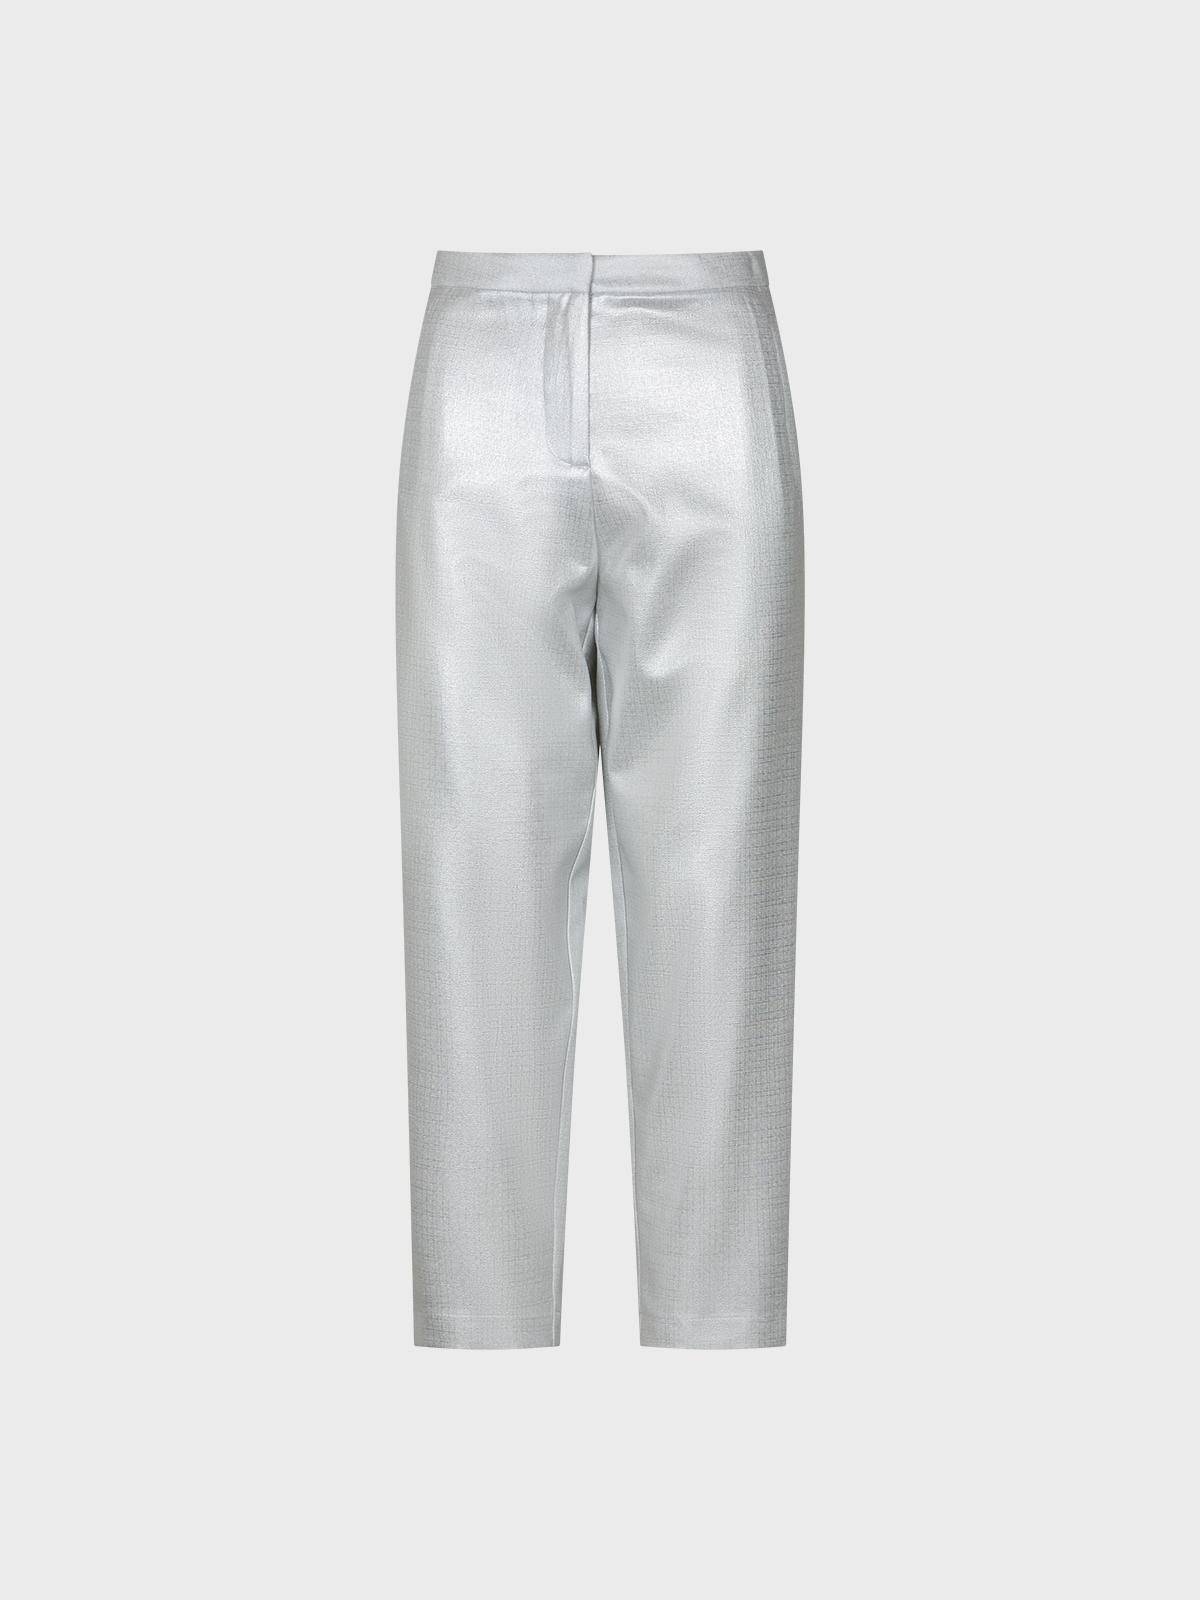 Pantalone silver foil